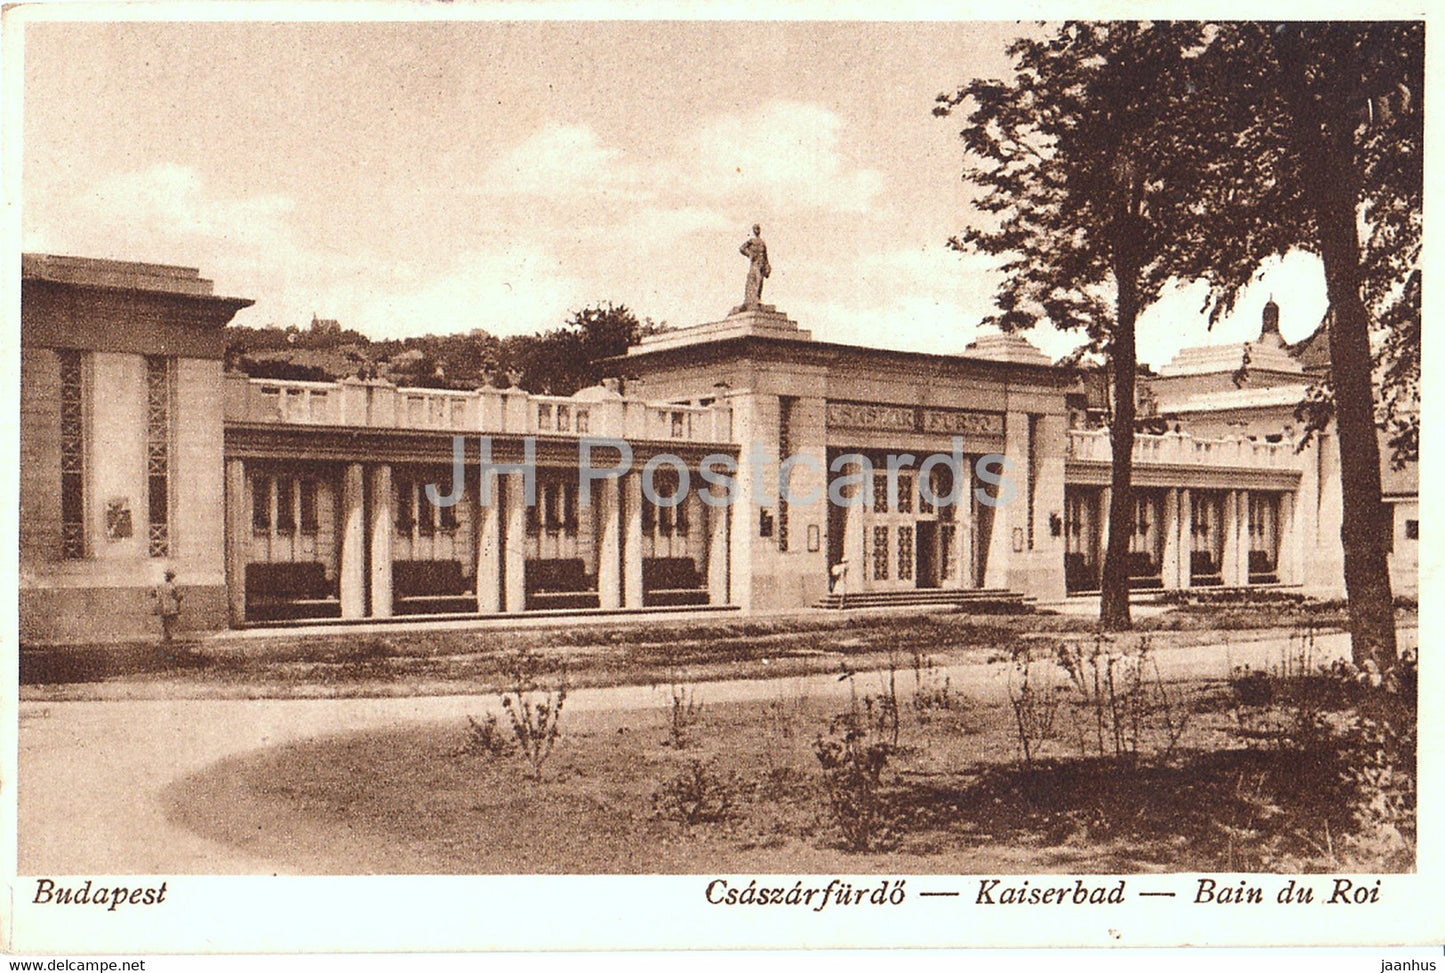 Budapest - Csaszarfurdo - Kaiserbad - Bain du Roi - old postcard - Hungary - unused - JH Postcards